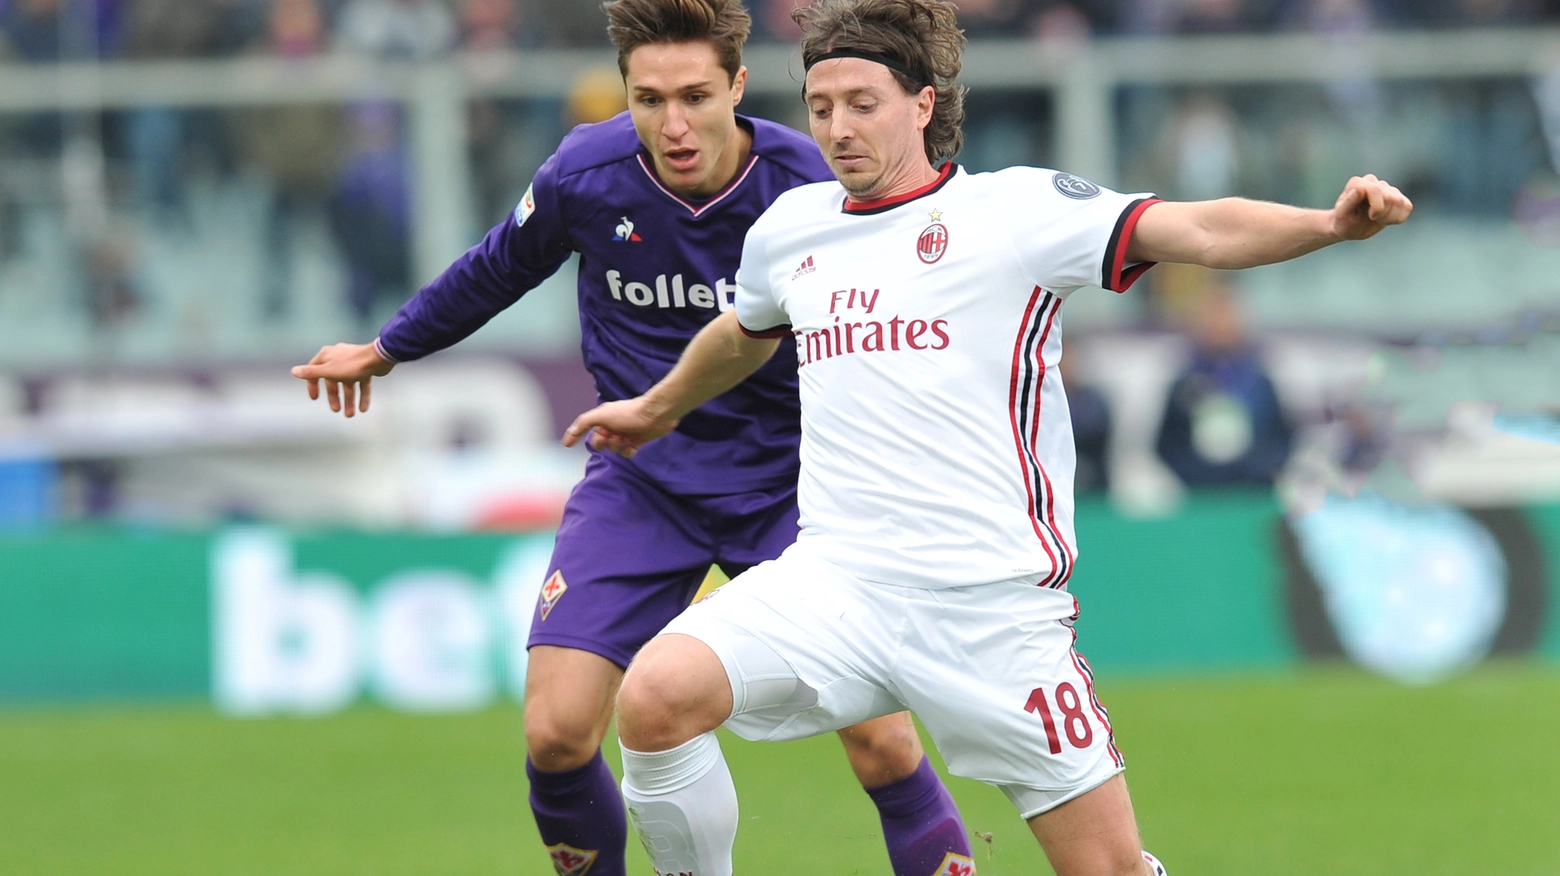 Le emozioni di Milan-Fiorentina 